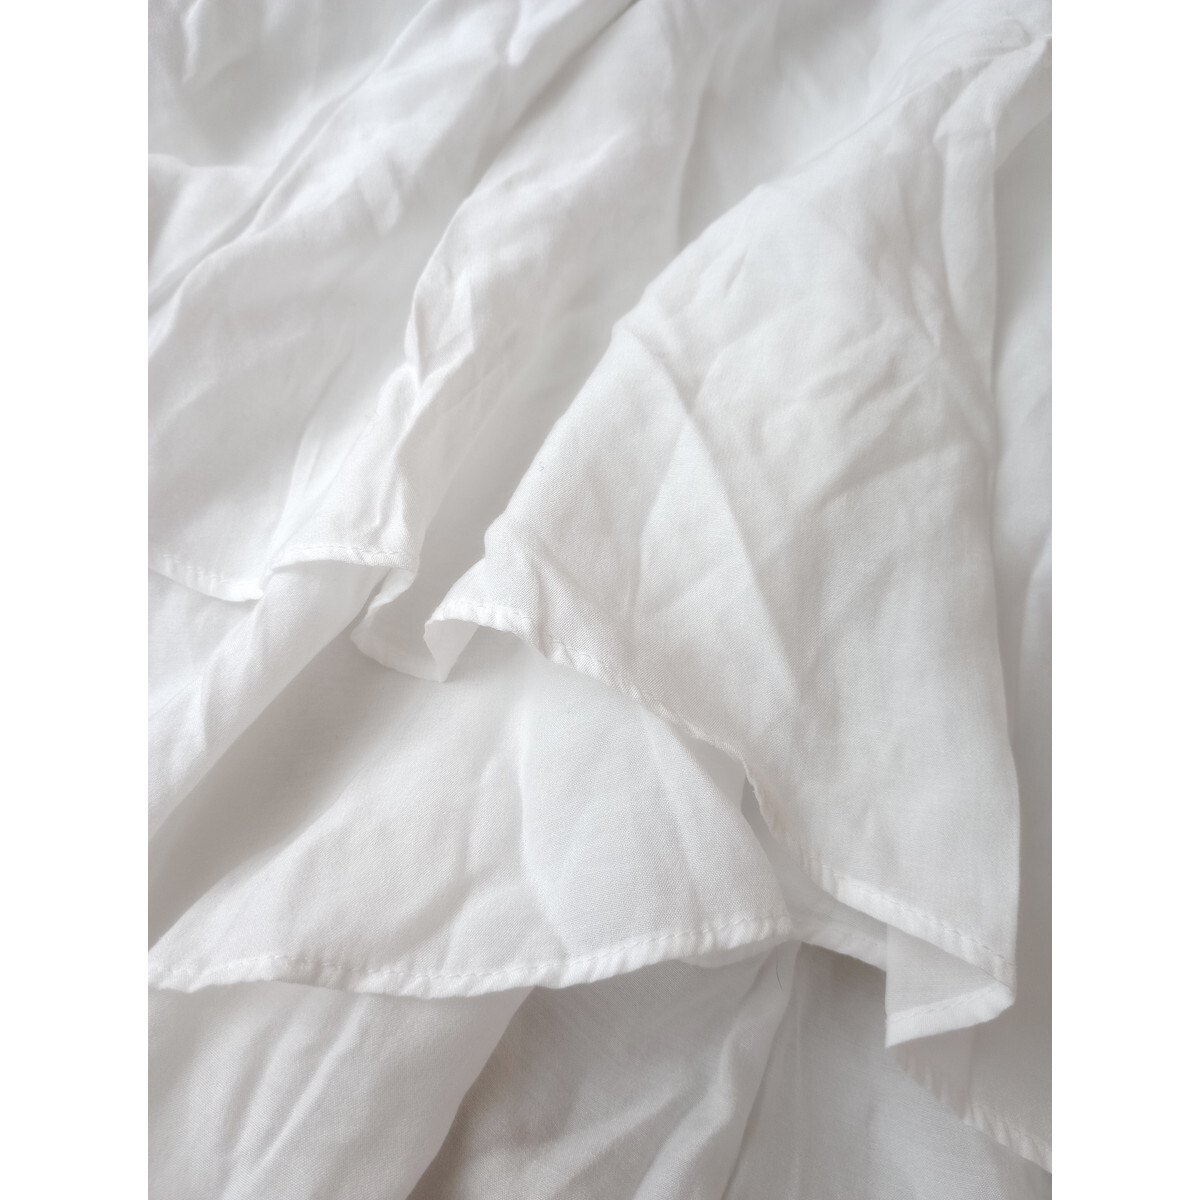 Agaa-ga[.., надеты изменение для! новый ~ хлопчатник .~]V шея блуза сделано в Японии 9 номер белый белый .. чувство (10Y+0006)